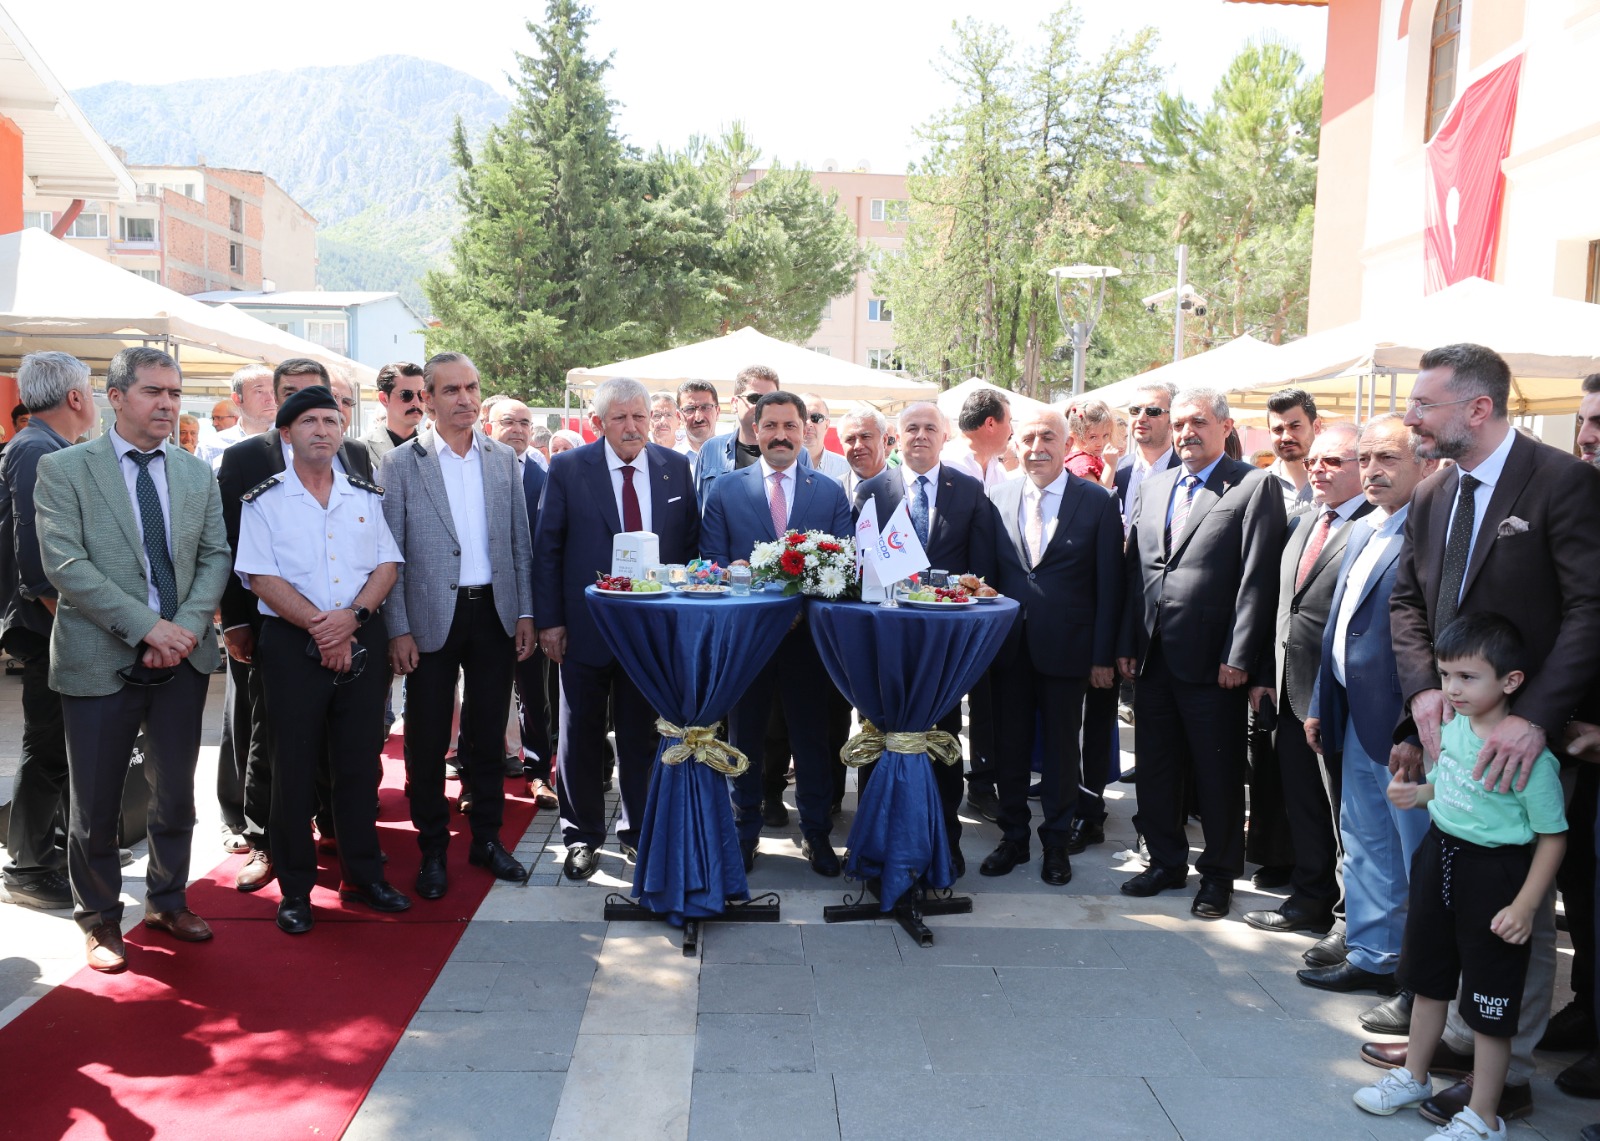 Amasya Valisi Mustafa MASATLI’nın Katılımıyla Amasya-Samsun ve Amasya-Havza Arası Demiryolu Yolcu Seferleri Başladı